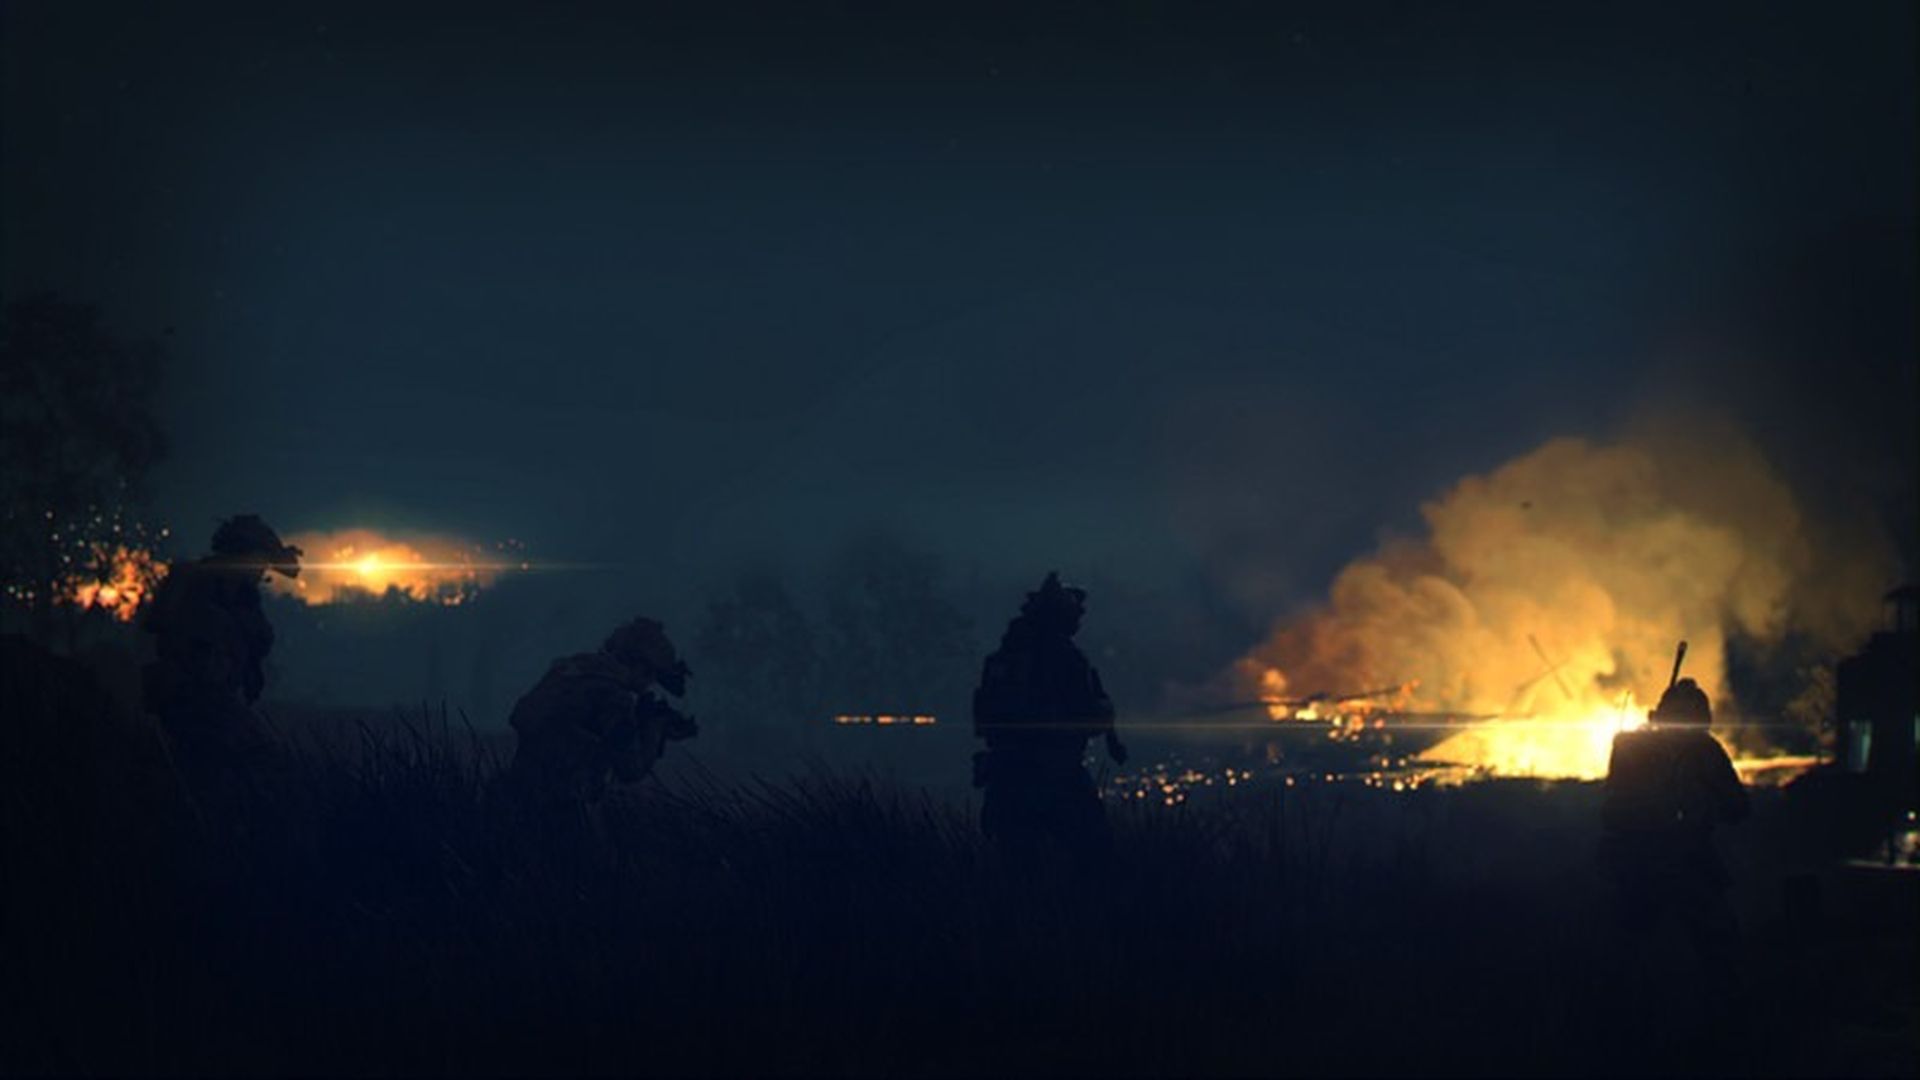 Os fãs esperam Modern Warfare 2 há muito tempo.  Agora finalmente temos o trailer oficial, vamos nos aprofundar nos detalhes sobre a data de lançamento, mods de jogo e muito mais.